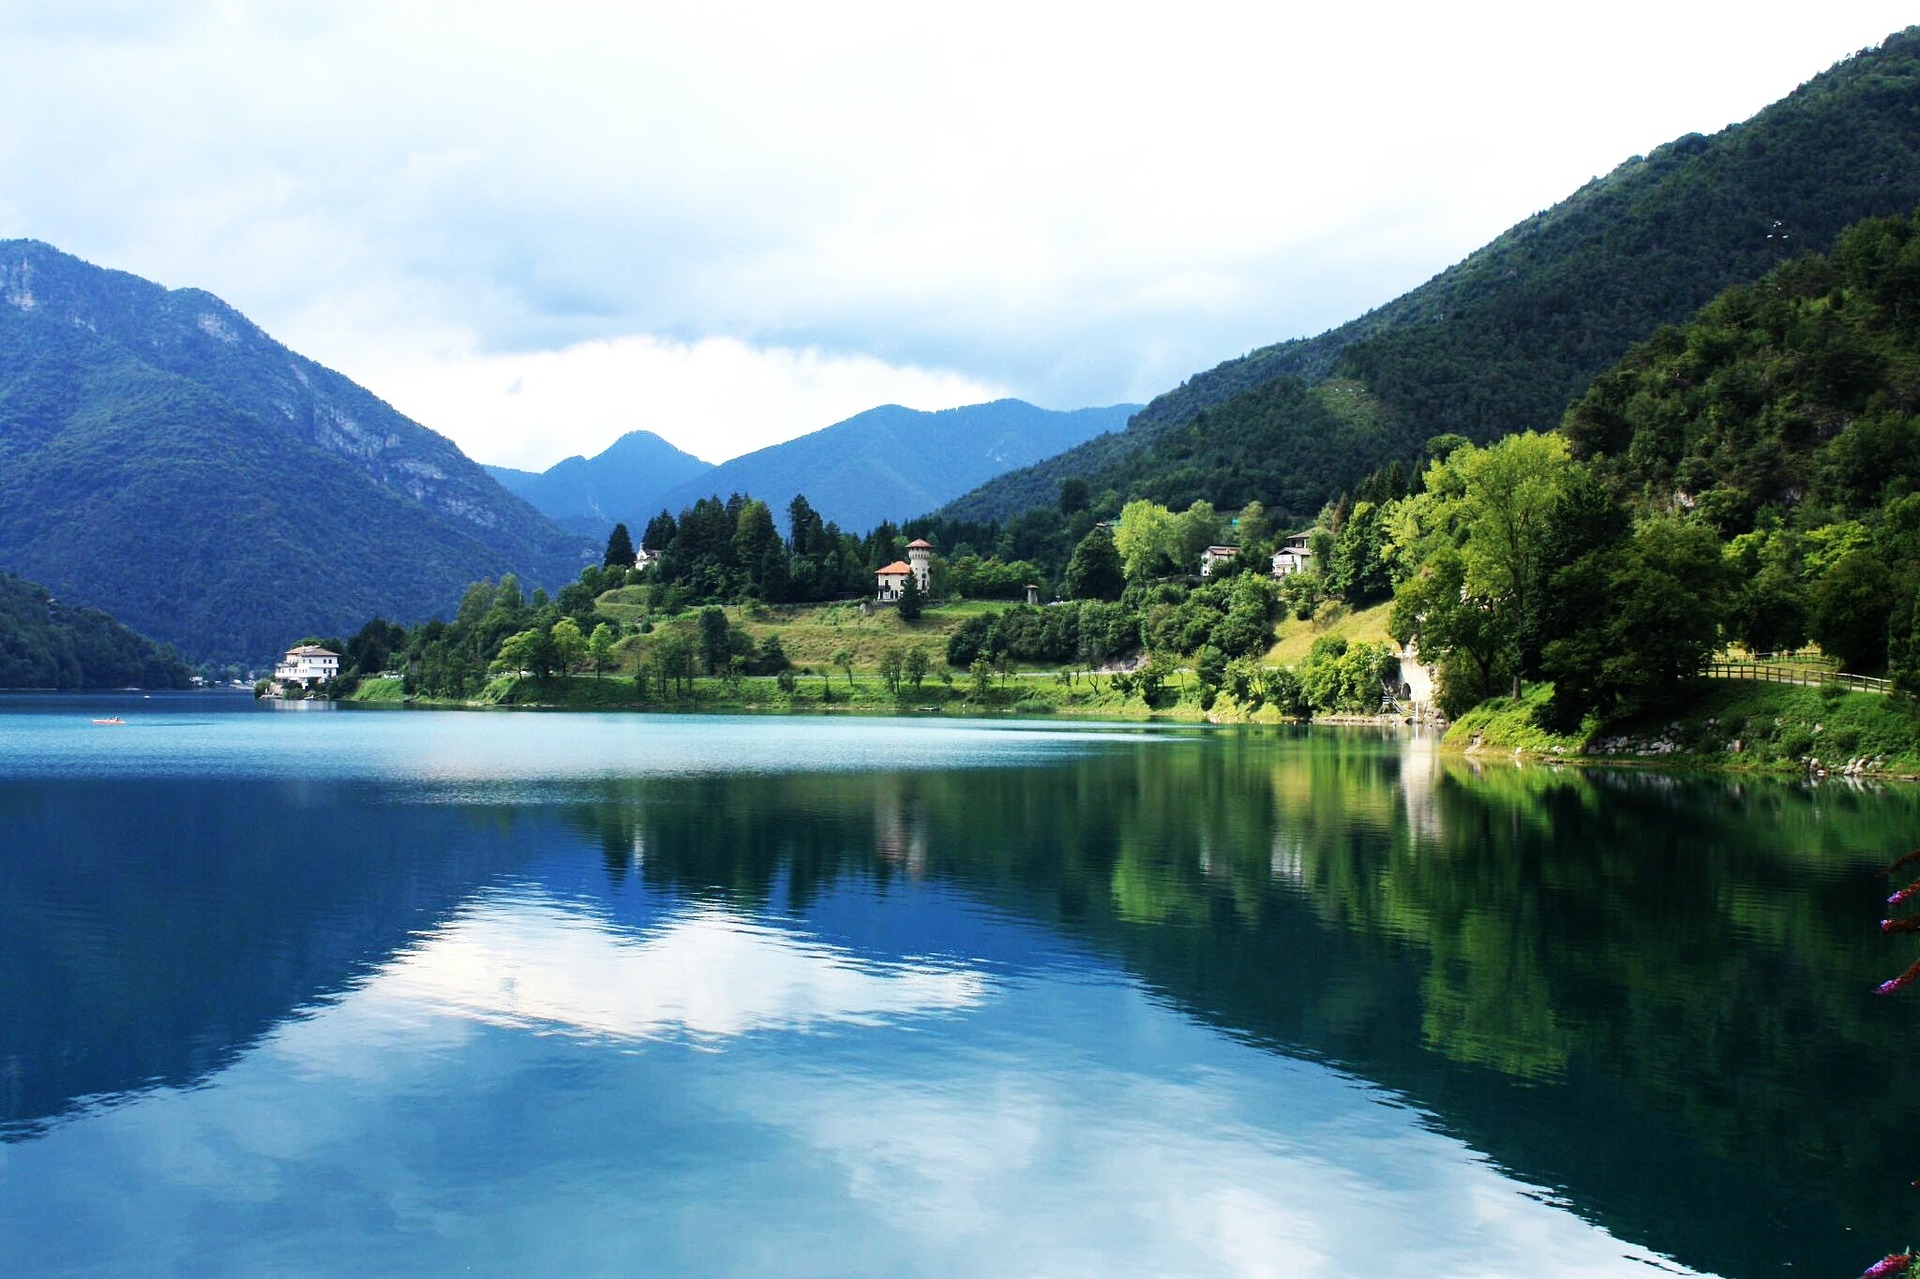 passeggiata del lago di Ledro in Trentino, valle di Ledro